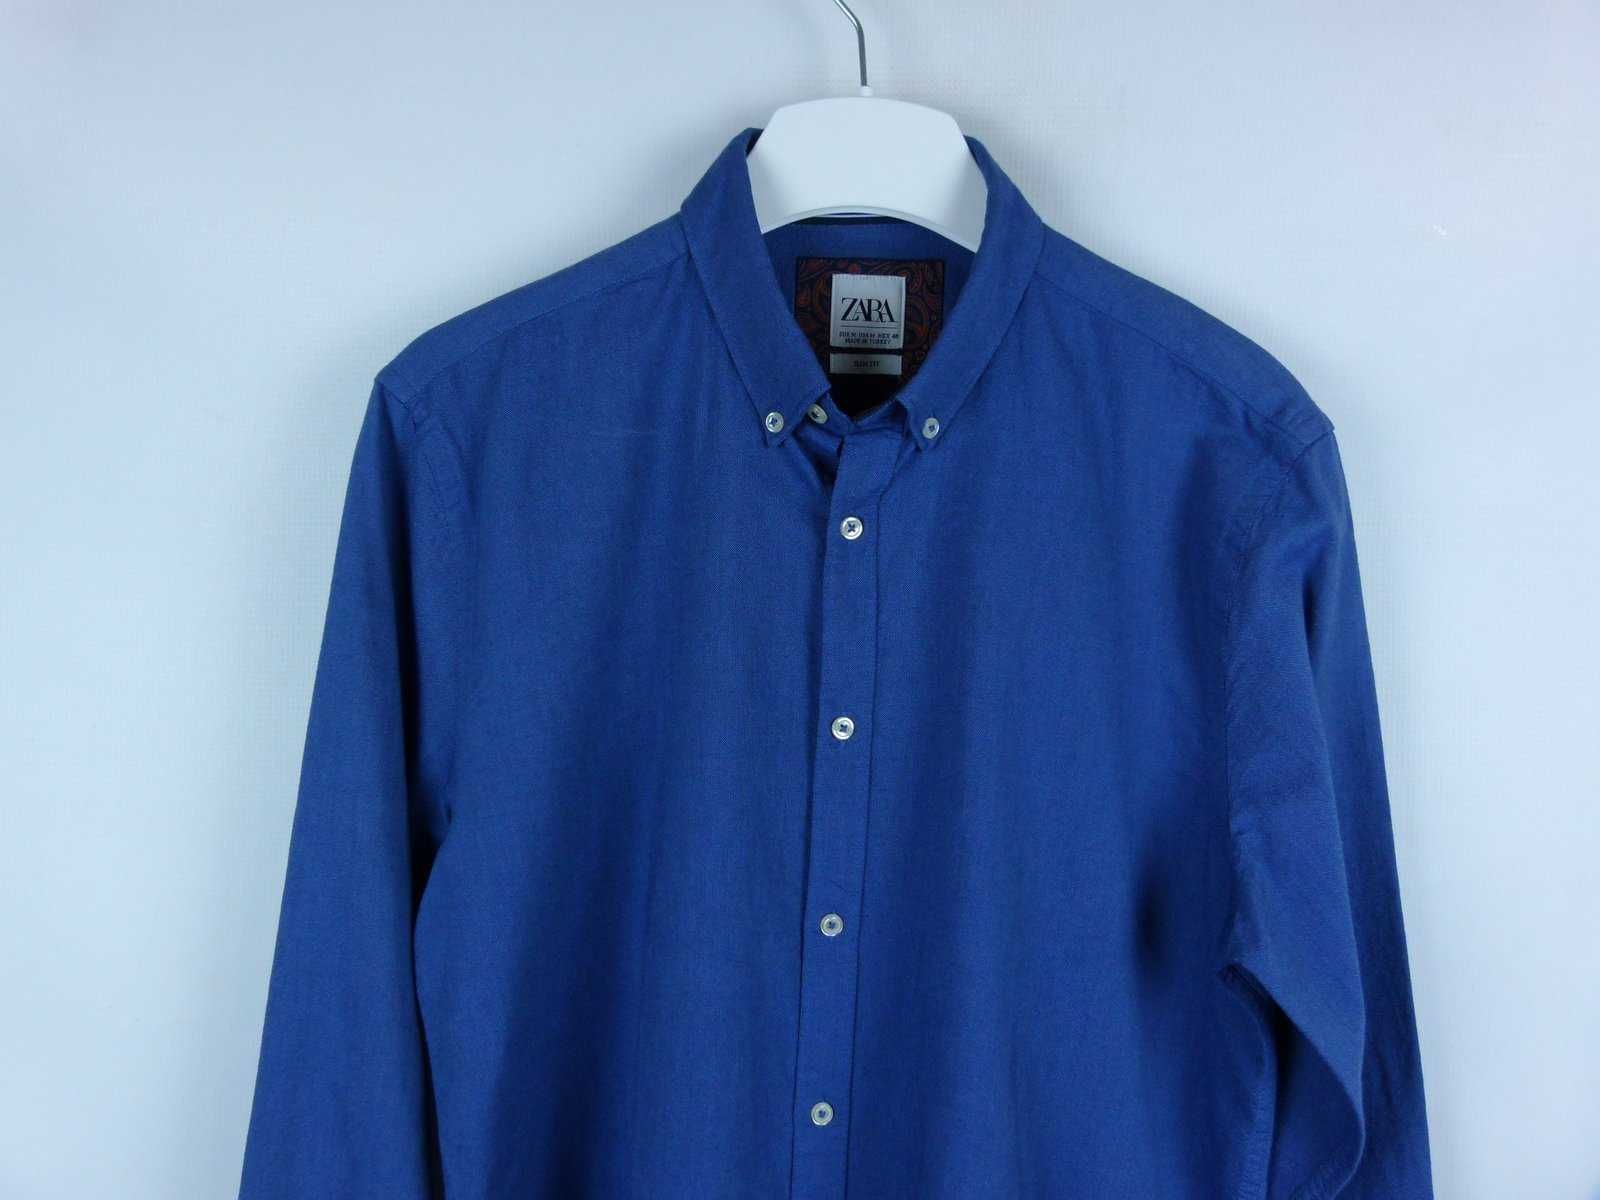 Zara koszula blue bawełna / M slim fit